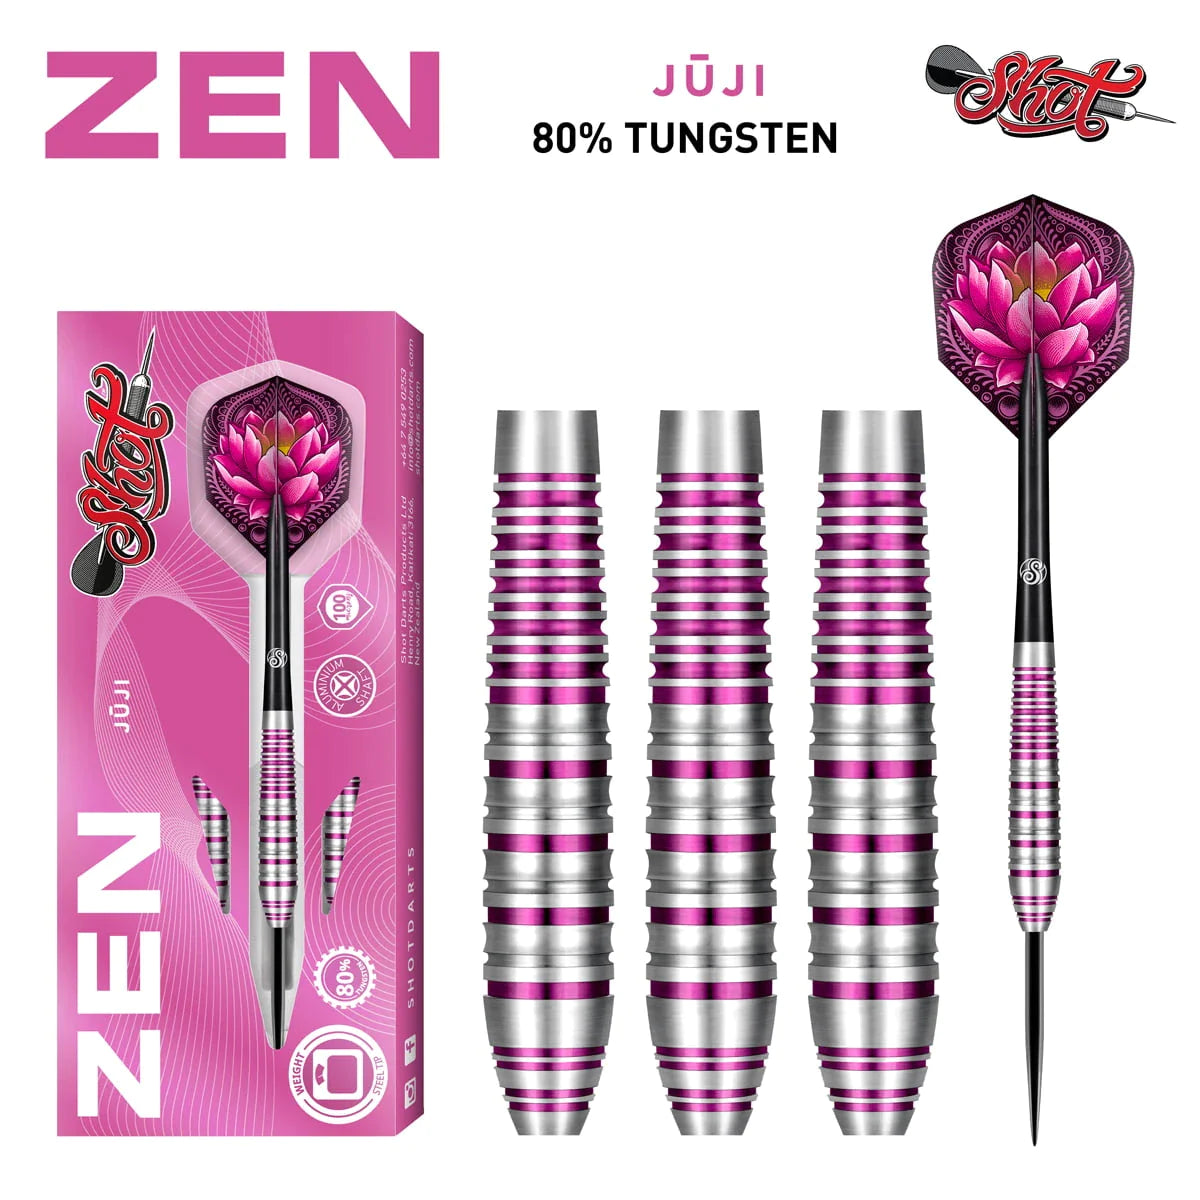 Shot Zen Juji 23g 80% Tungsten Steel Tip Darts